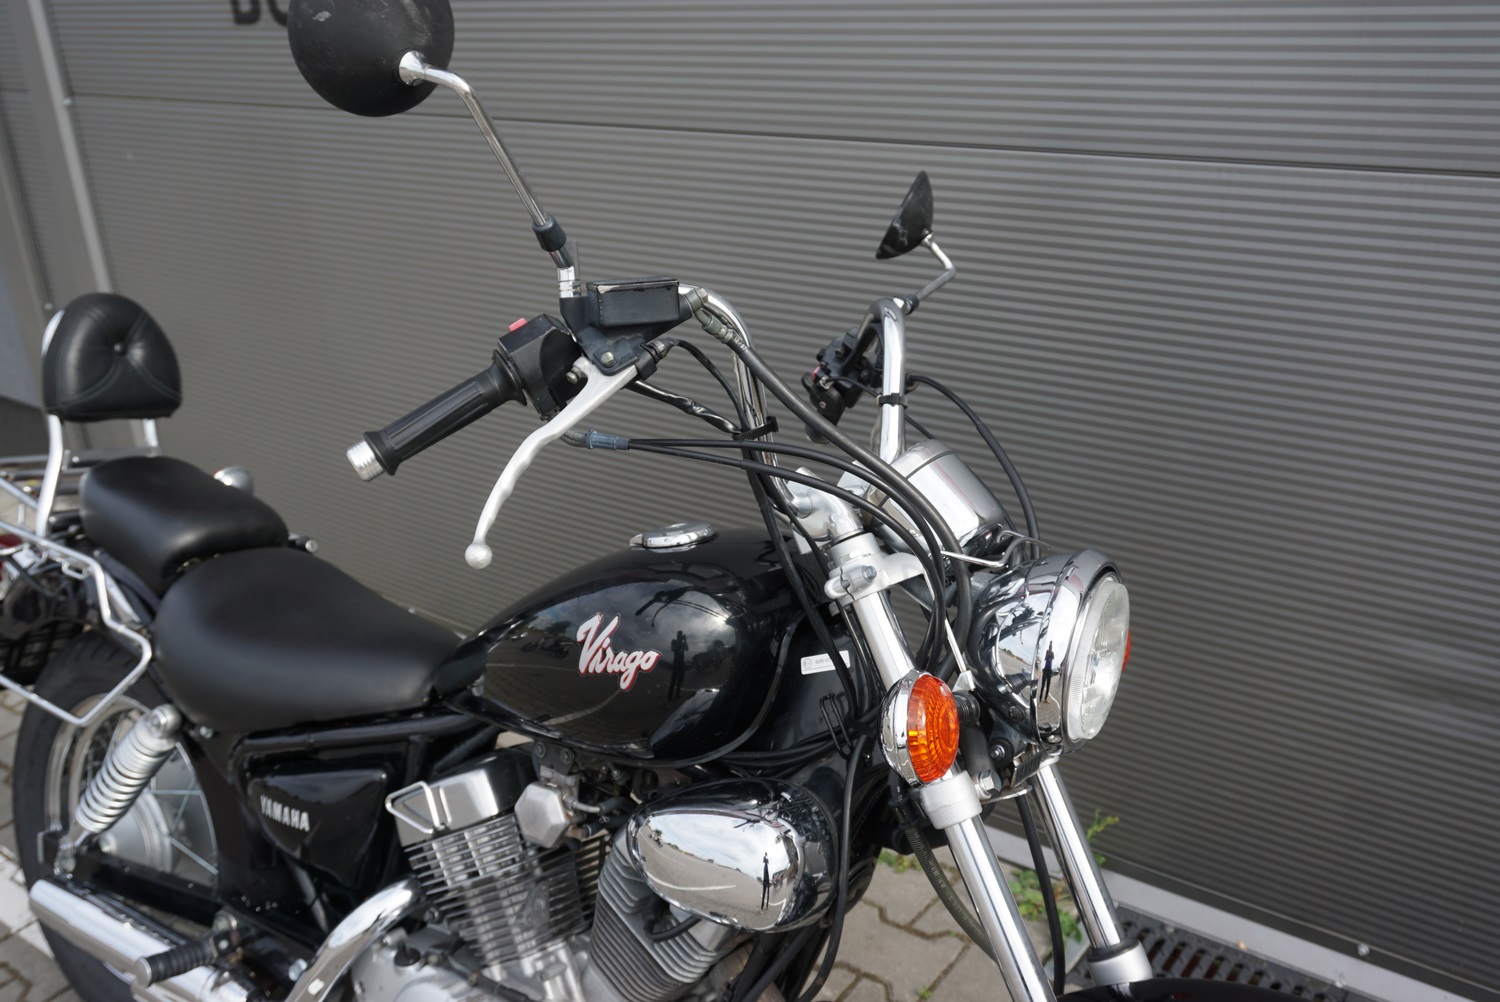 Yamaha Virago 250/125